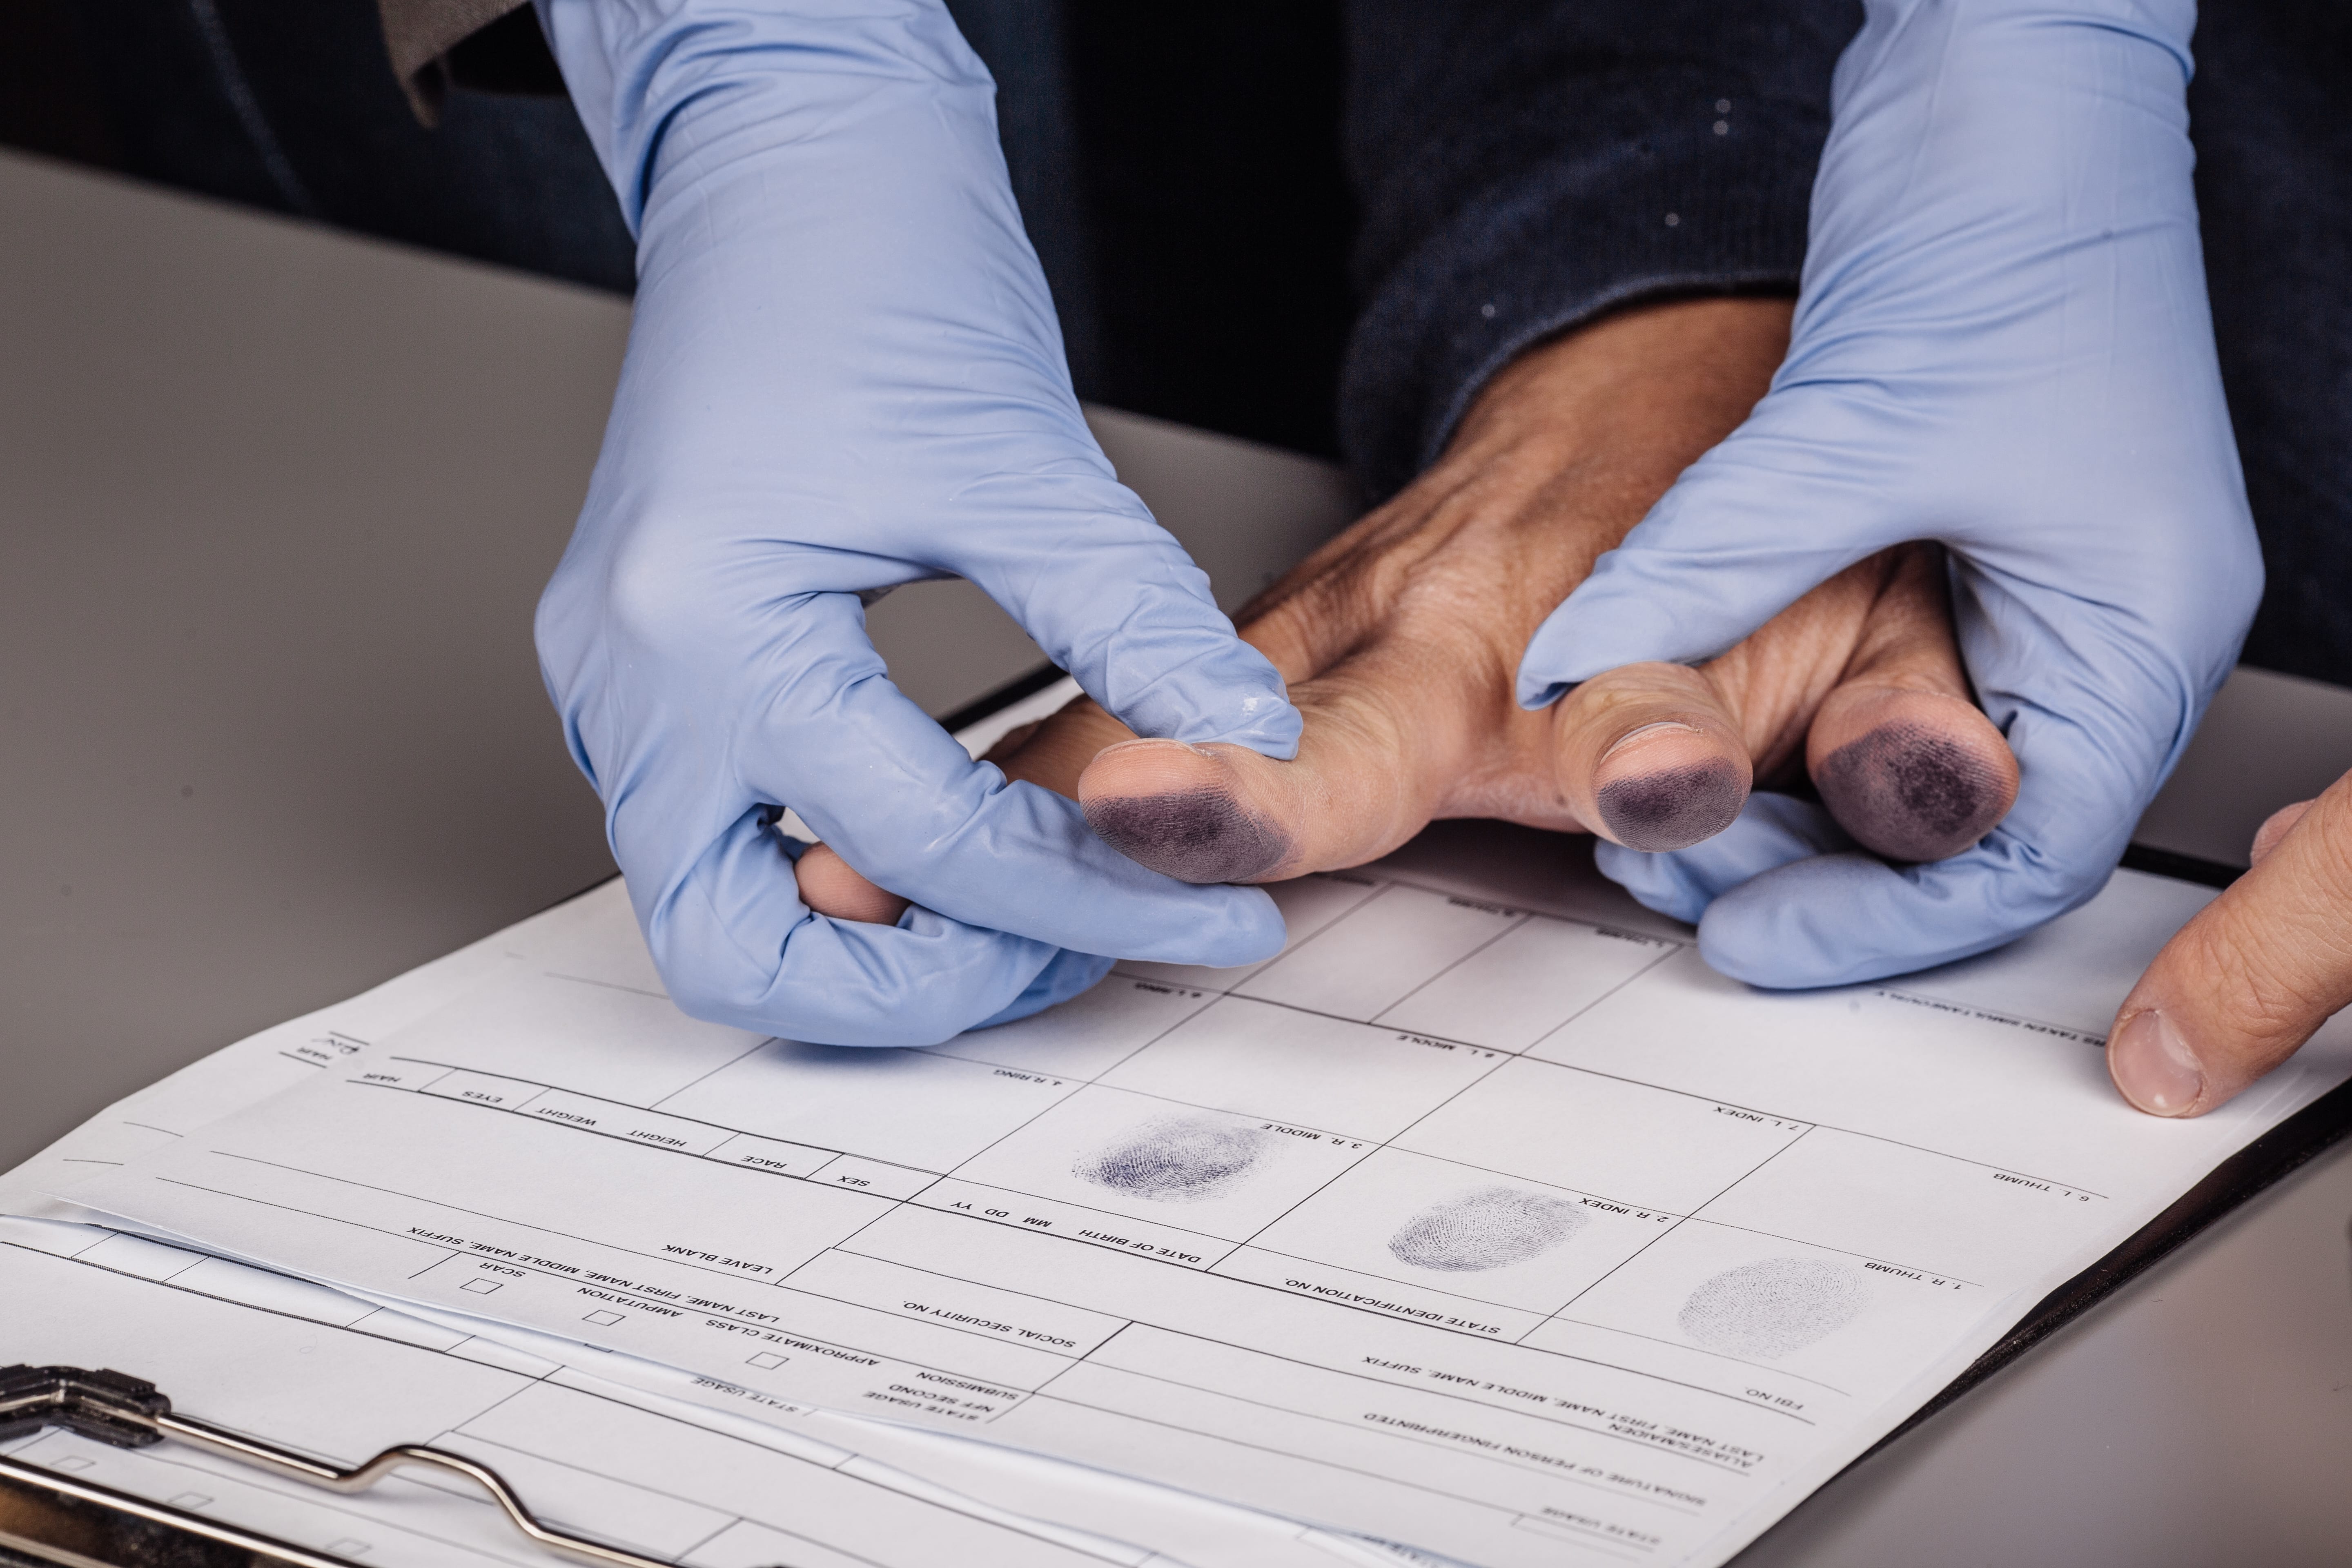 criminal getting finger printed